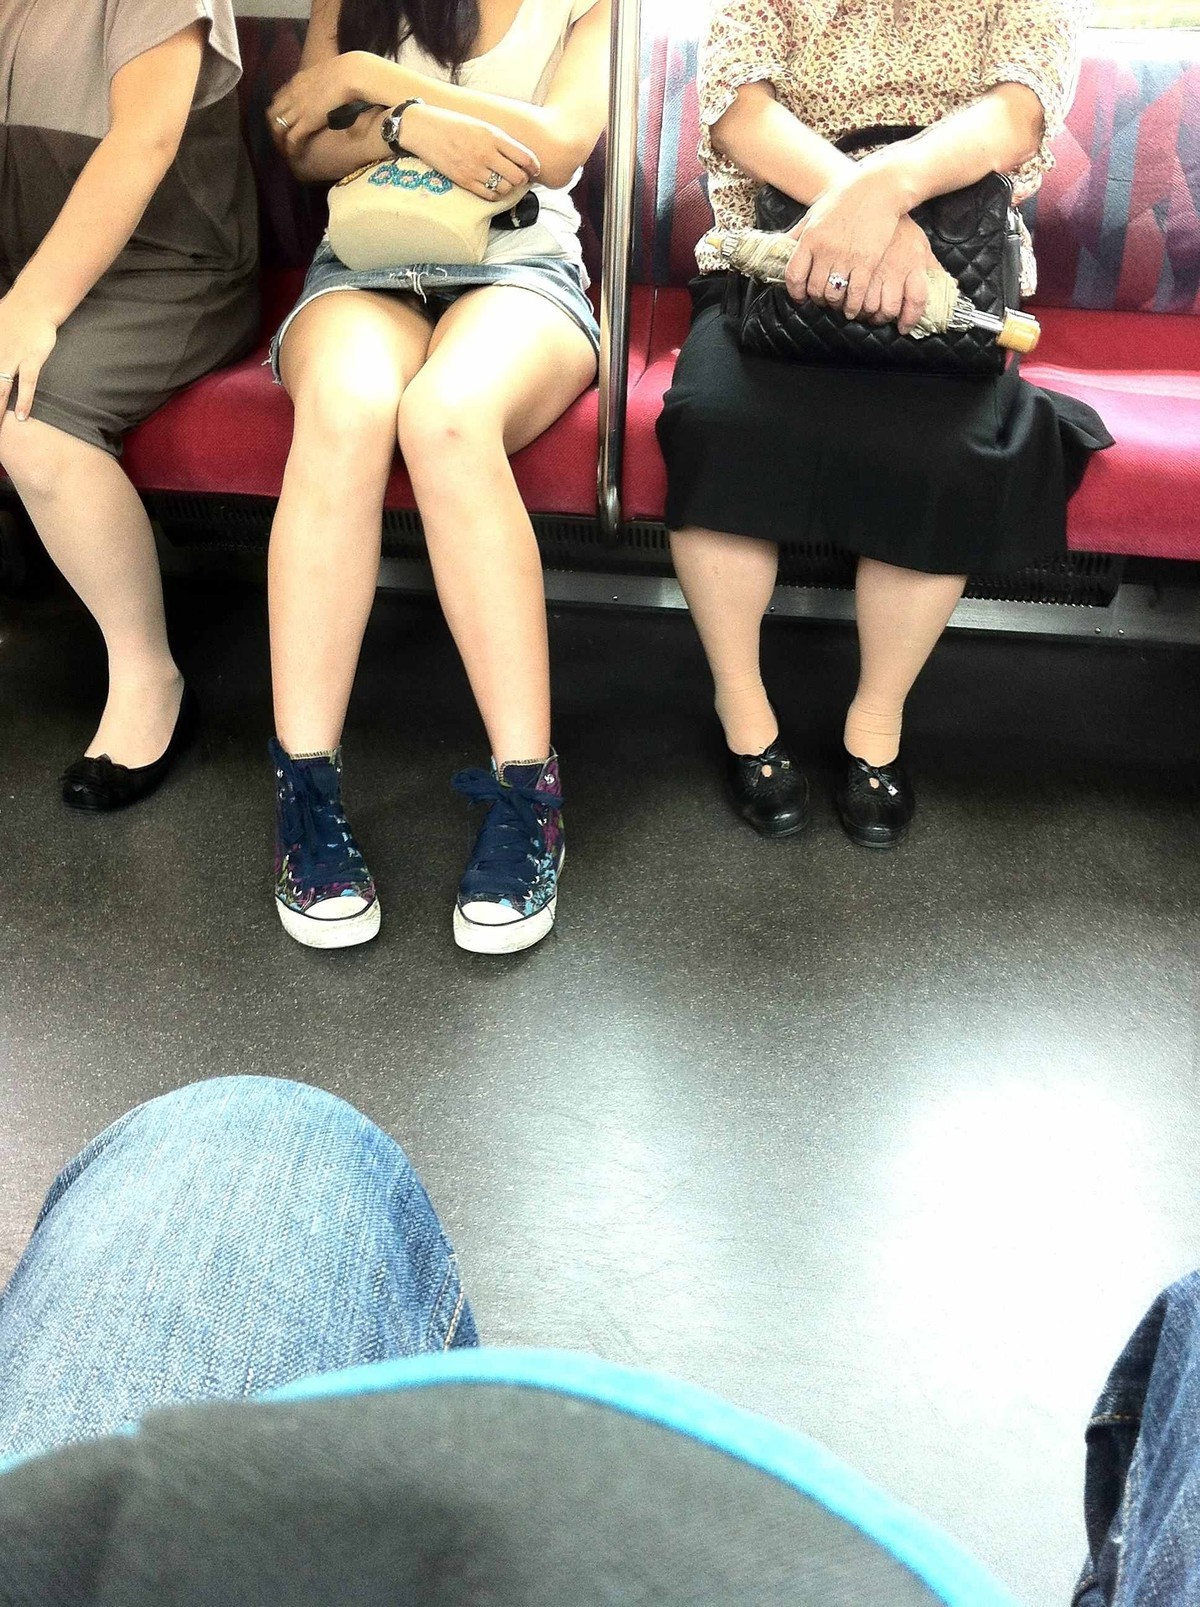 電車で可愛いお嬢さんがいたのでコッソリとパンチラ撮影を試みたら・・・005